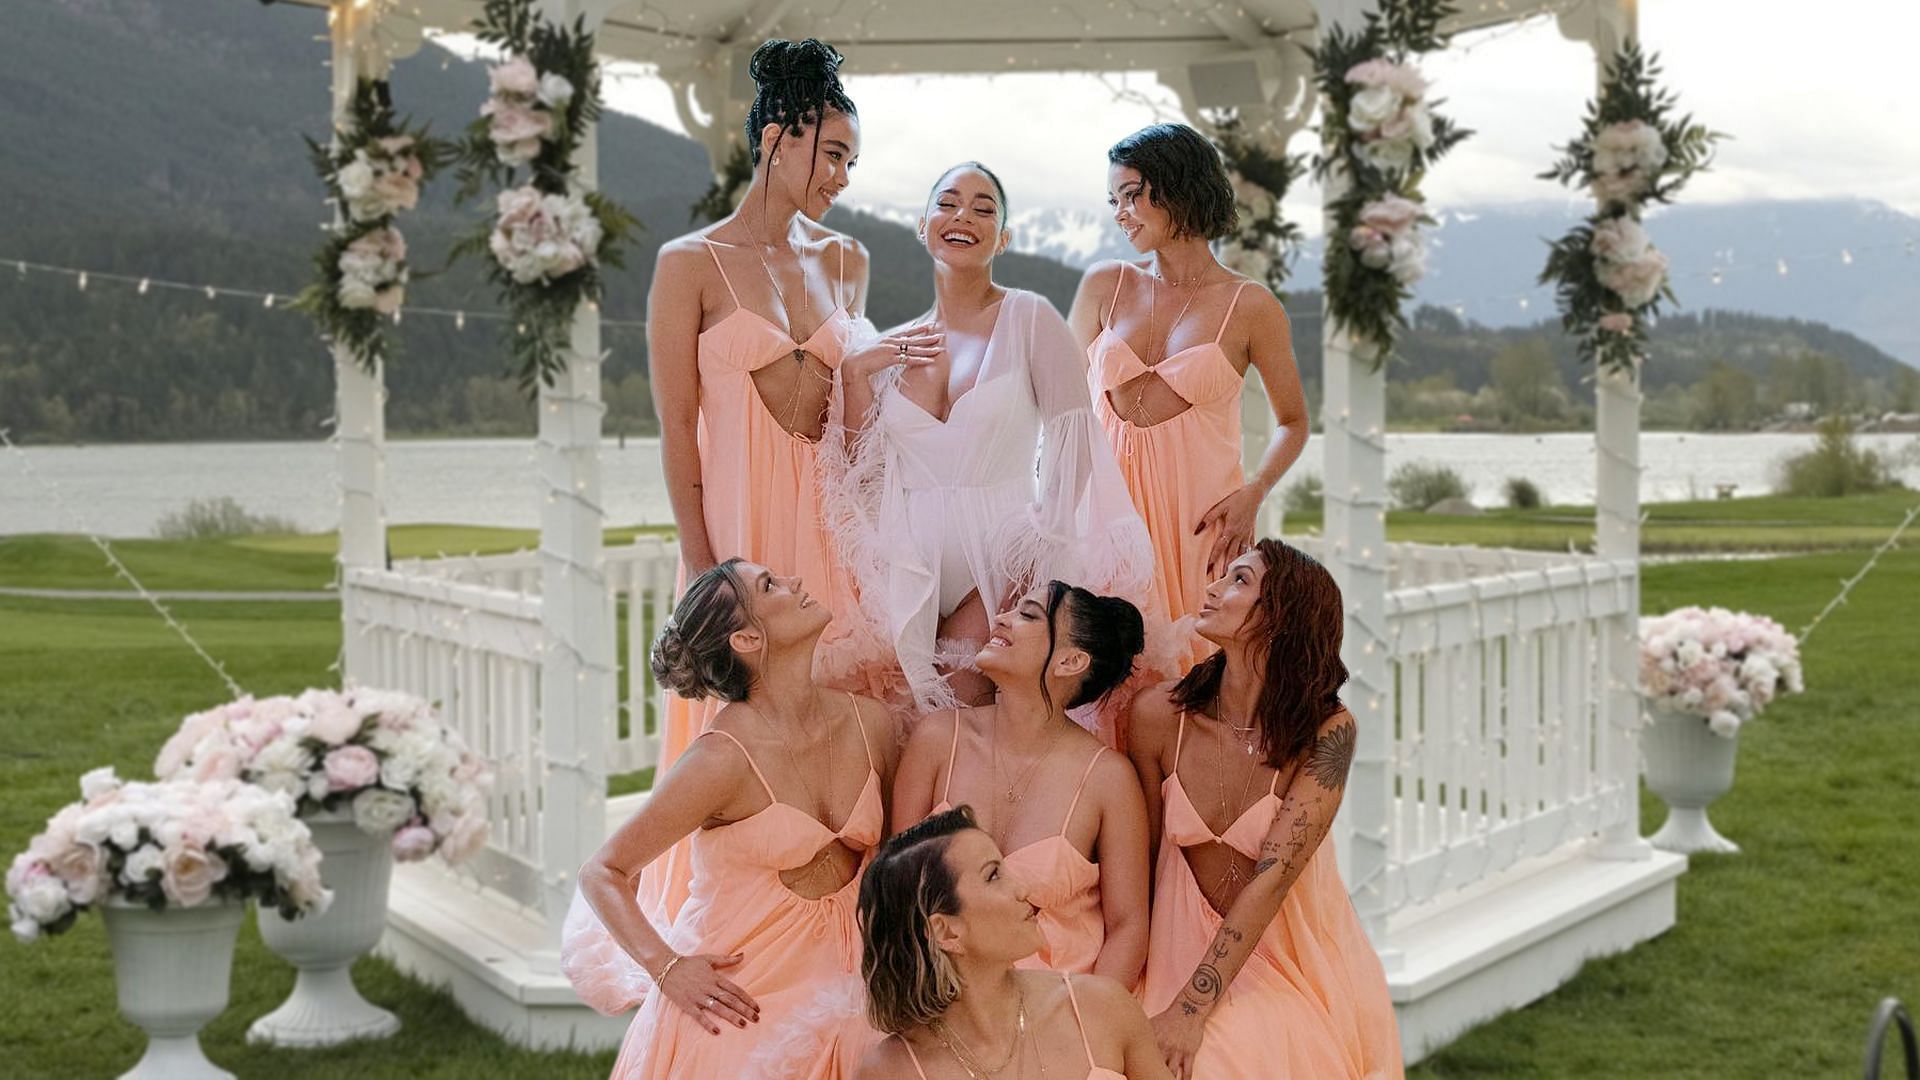 Vanessa Hudgens with her bridesmaids